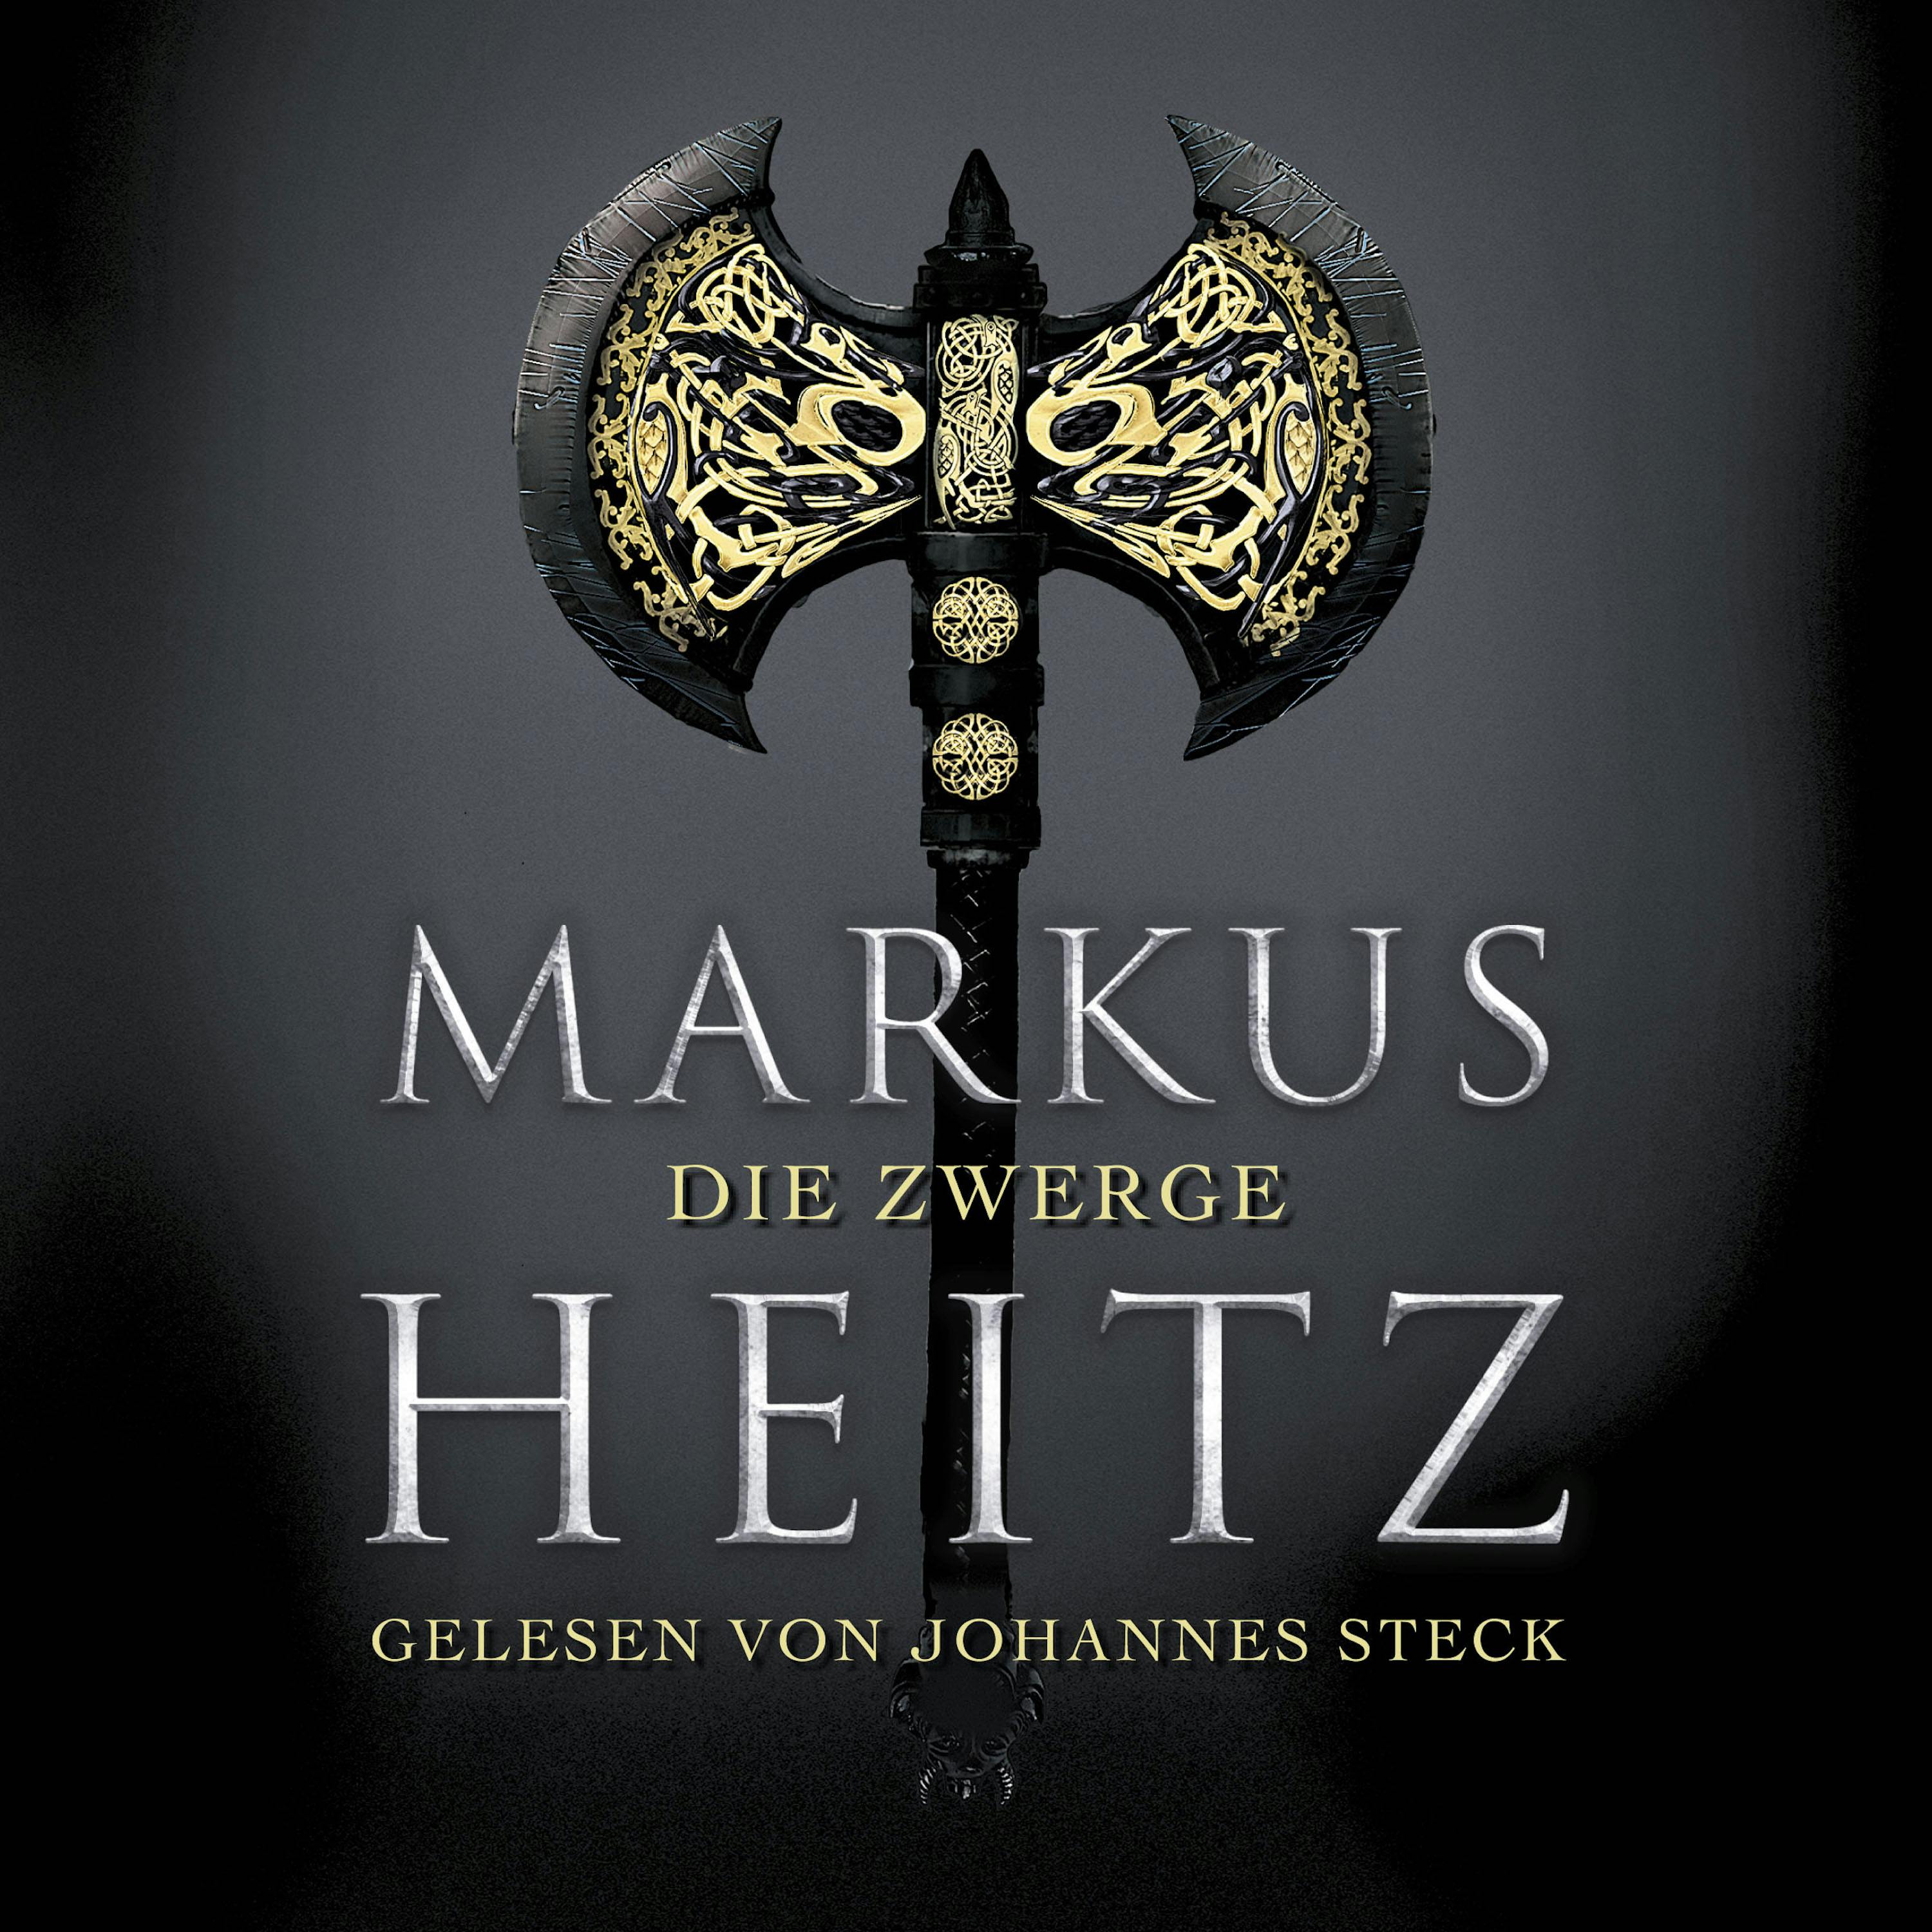 Die Zwerge - Markus Heitz